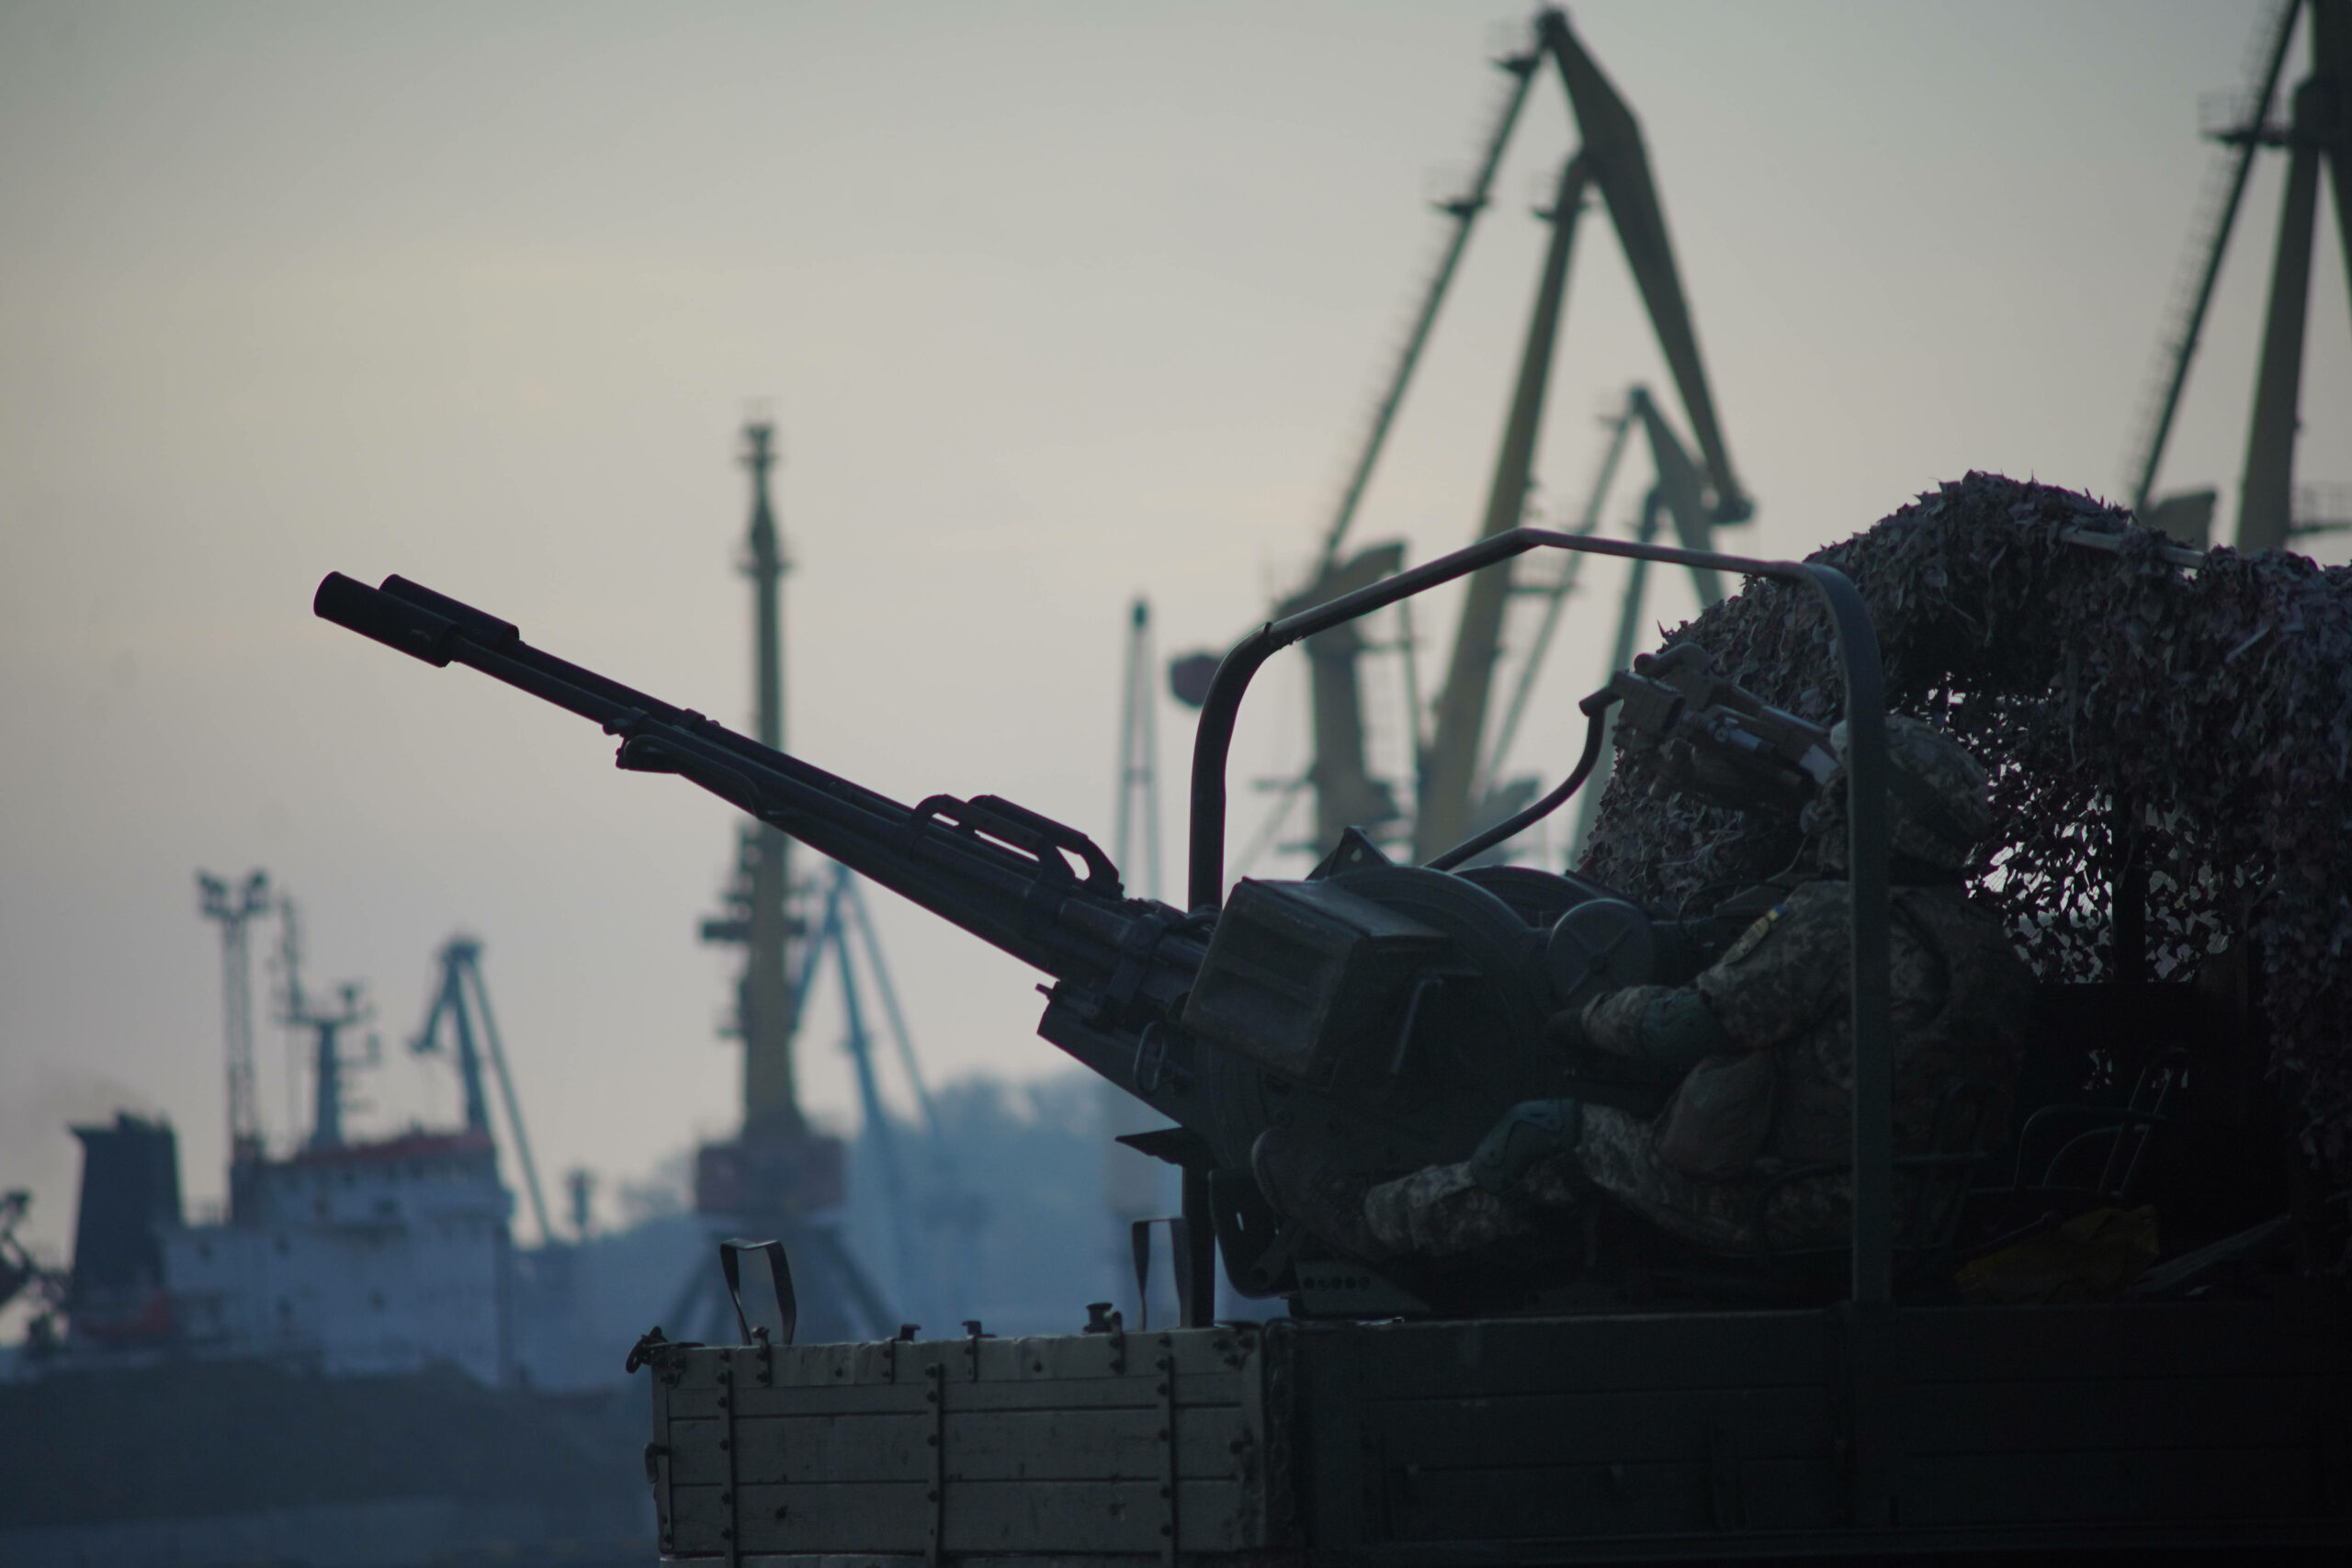 ПВО украинской армии в порту Одессы. Украина, 27 марта 2022 г. © Sipa / Scanpix / Leta